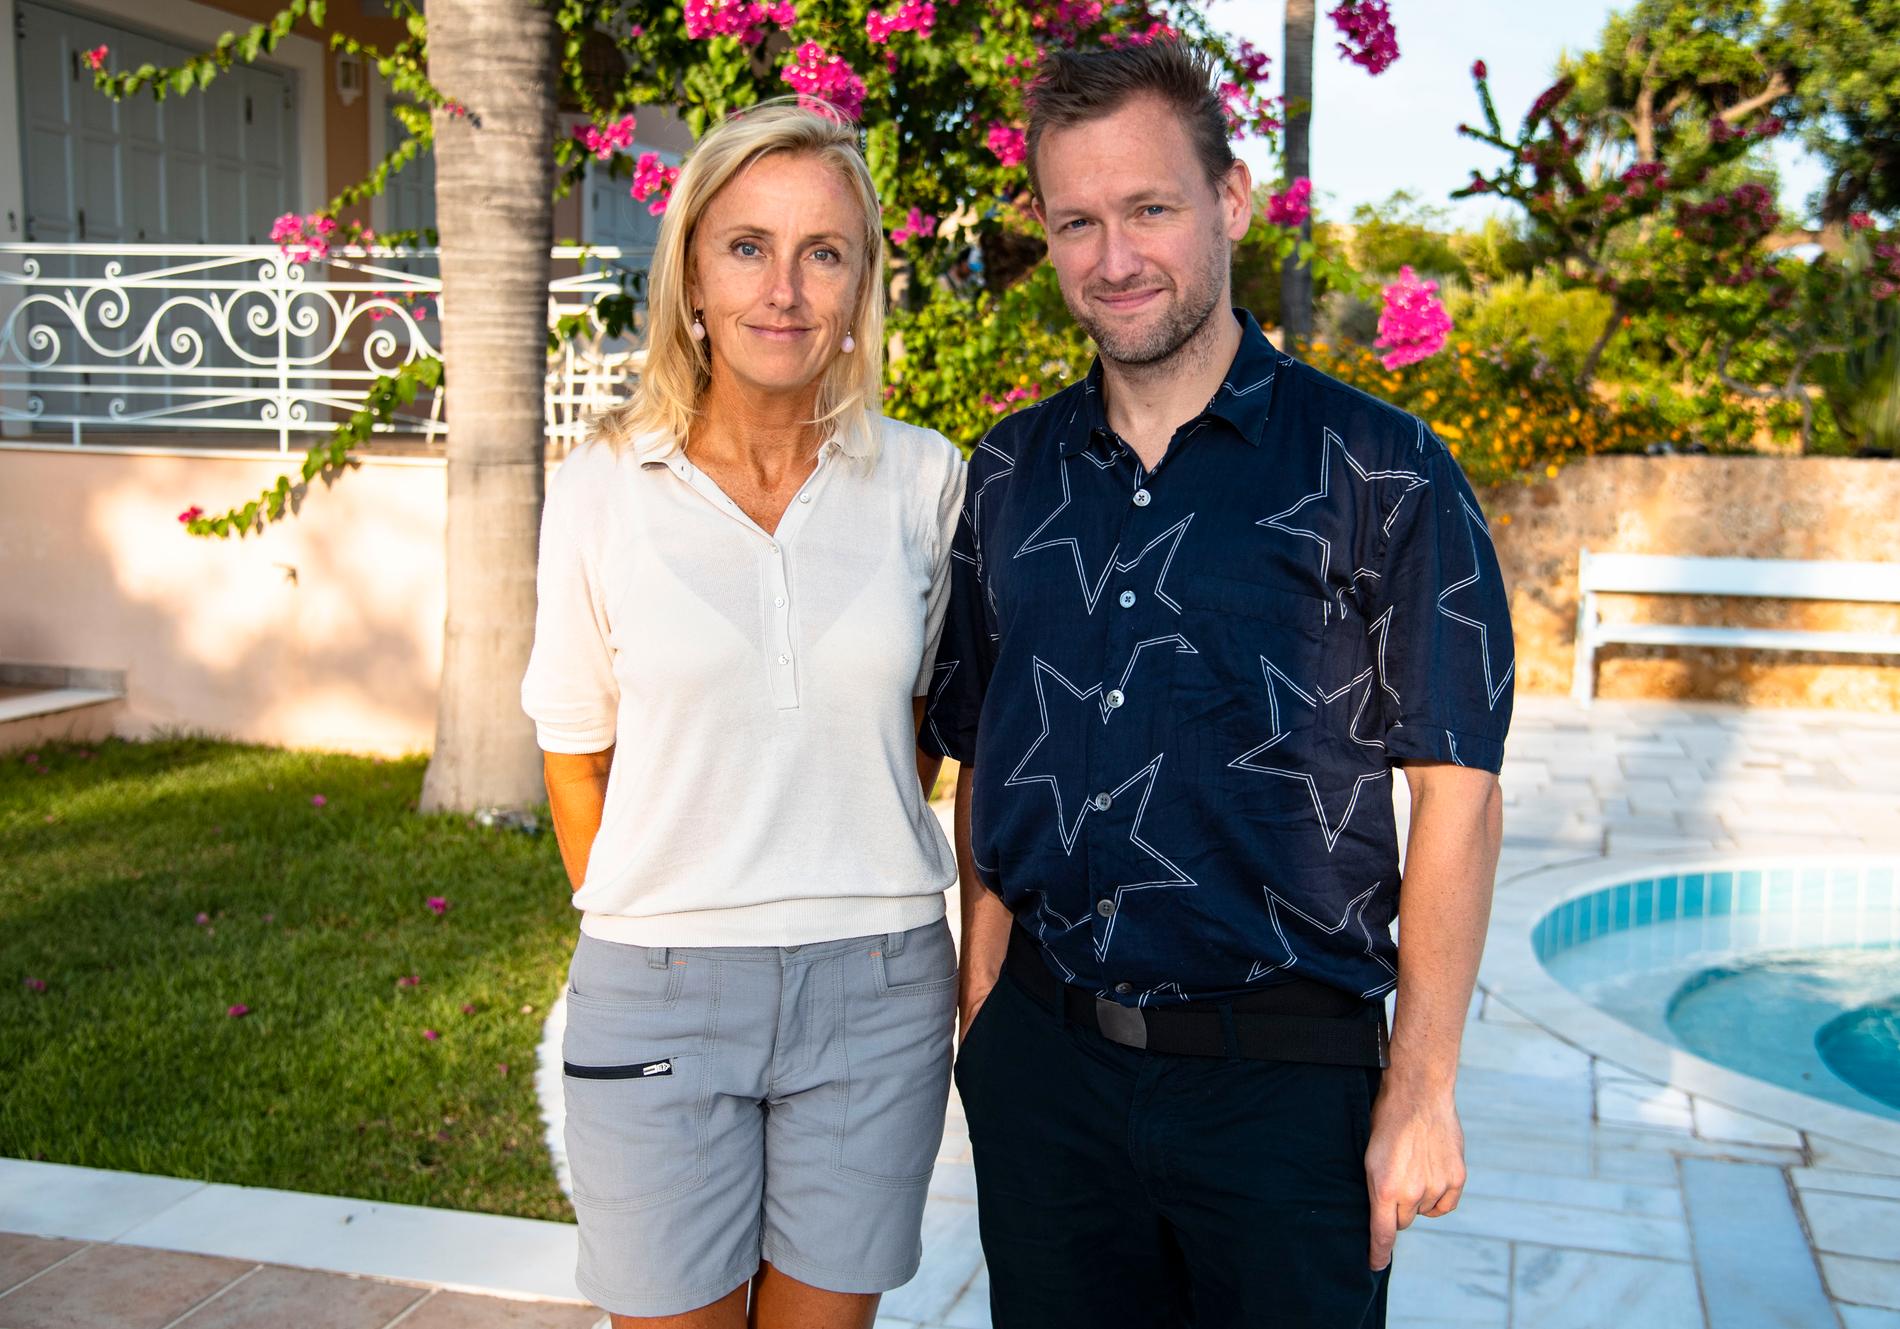 Nöjesbladets fotograf Lotte Fernvall och reporter Torbjörn Ek på plats i grekiska Porto Heli under inspelningen av ”Mästarnas mästare” inför säsongen 2020.